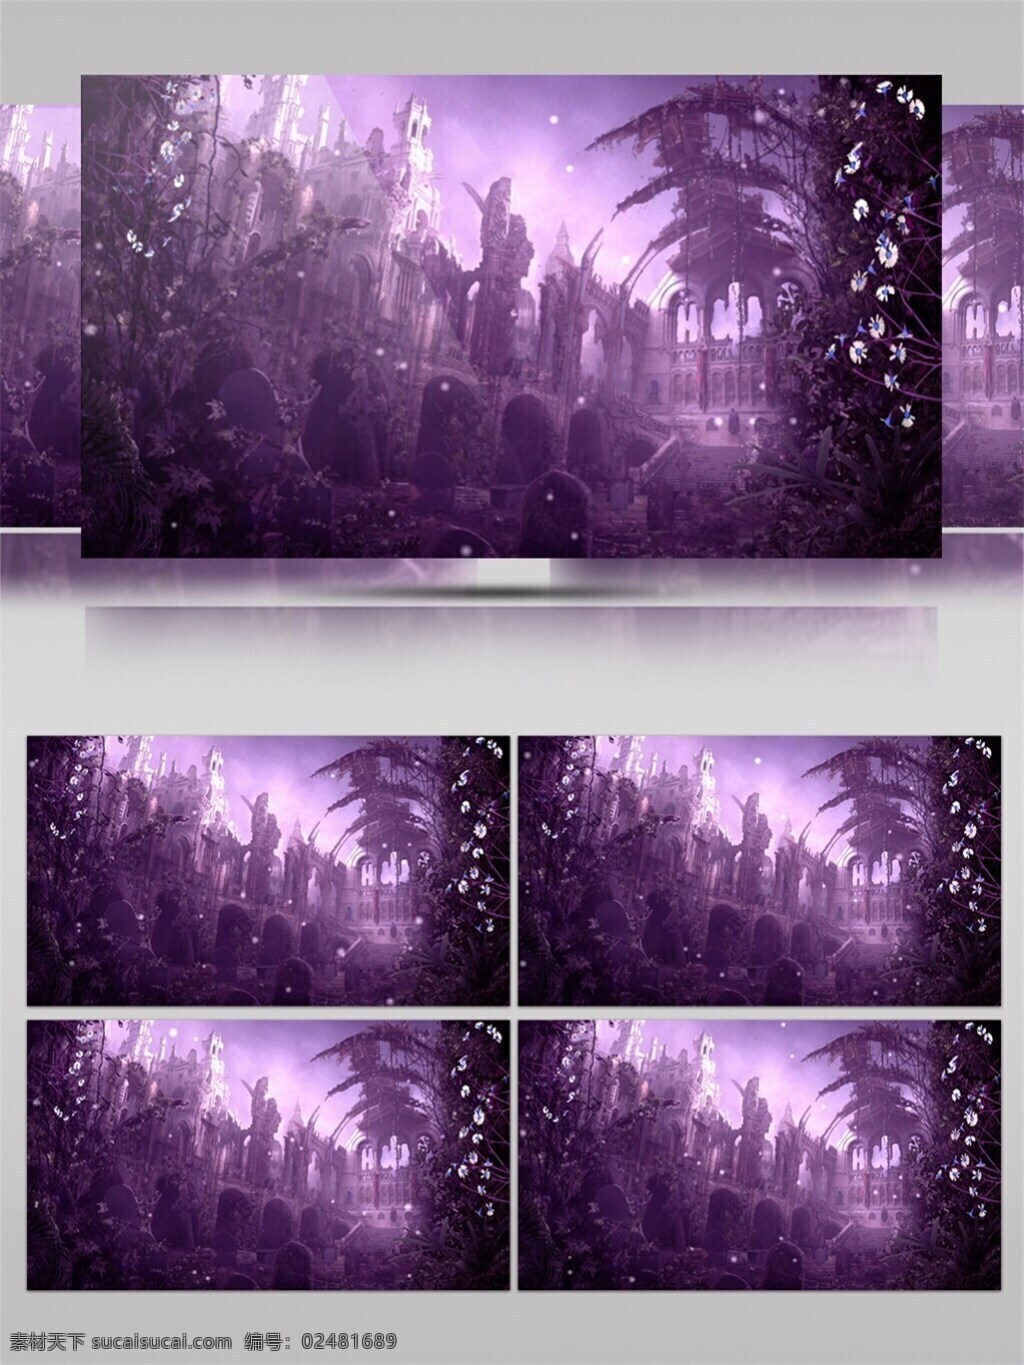 紫色 唯美 薰衣草 高清 视频 梦幻紫色 唯美浪漫 校园记忆 视频素材 动态视频素材